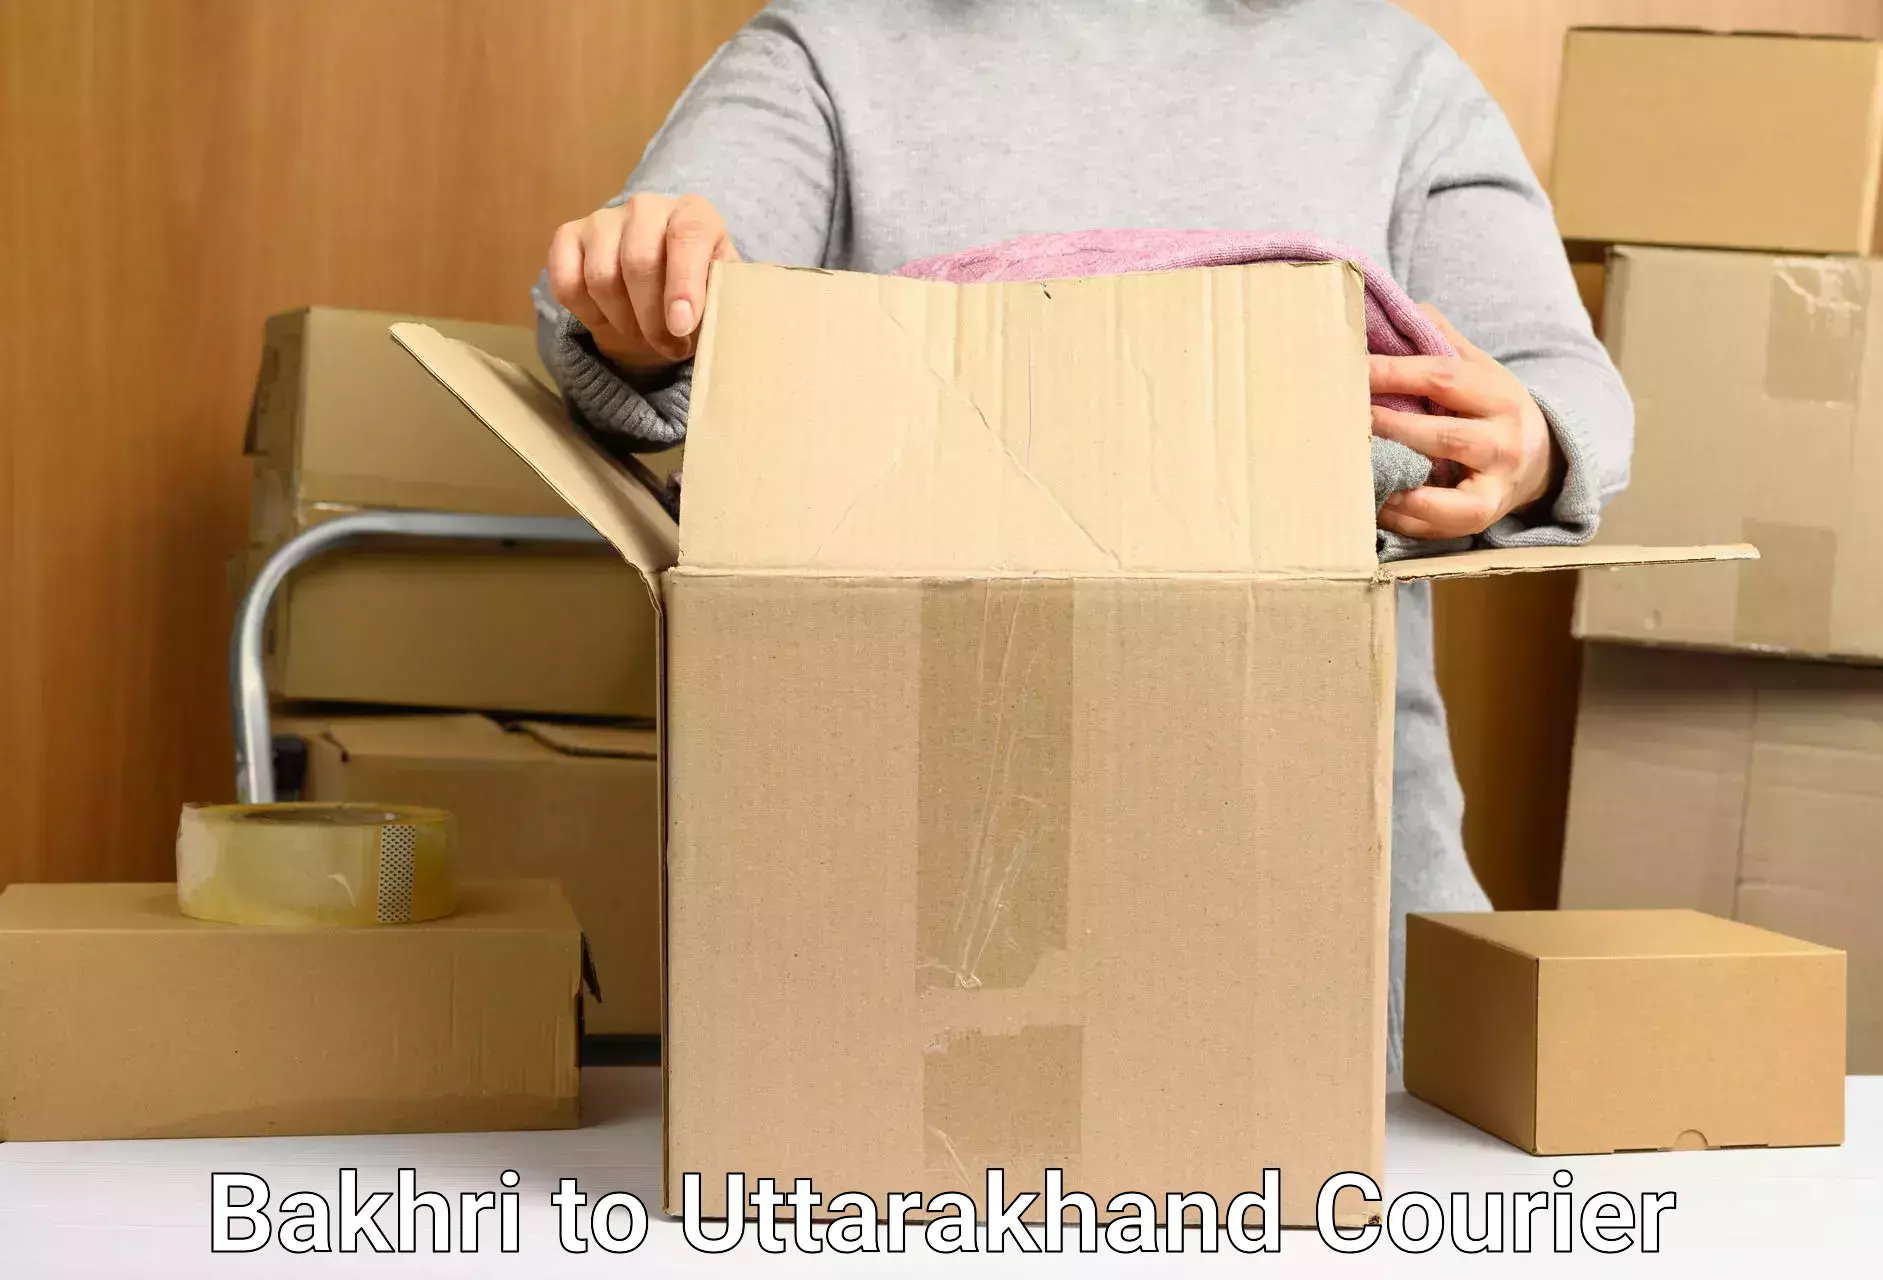 On-call courier service Bakhri to Uttarakhand